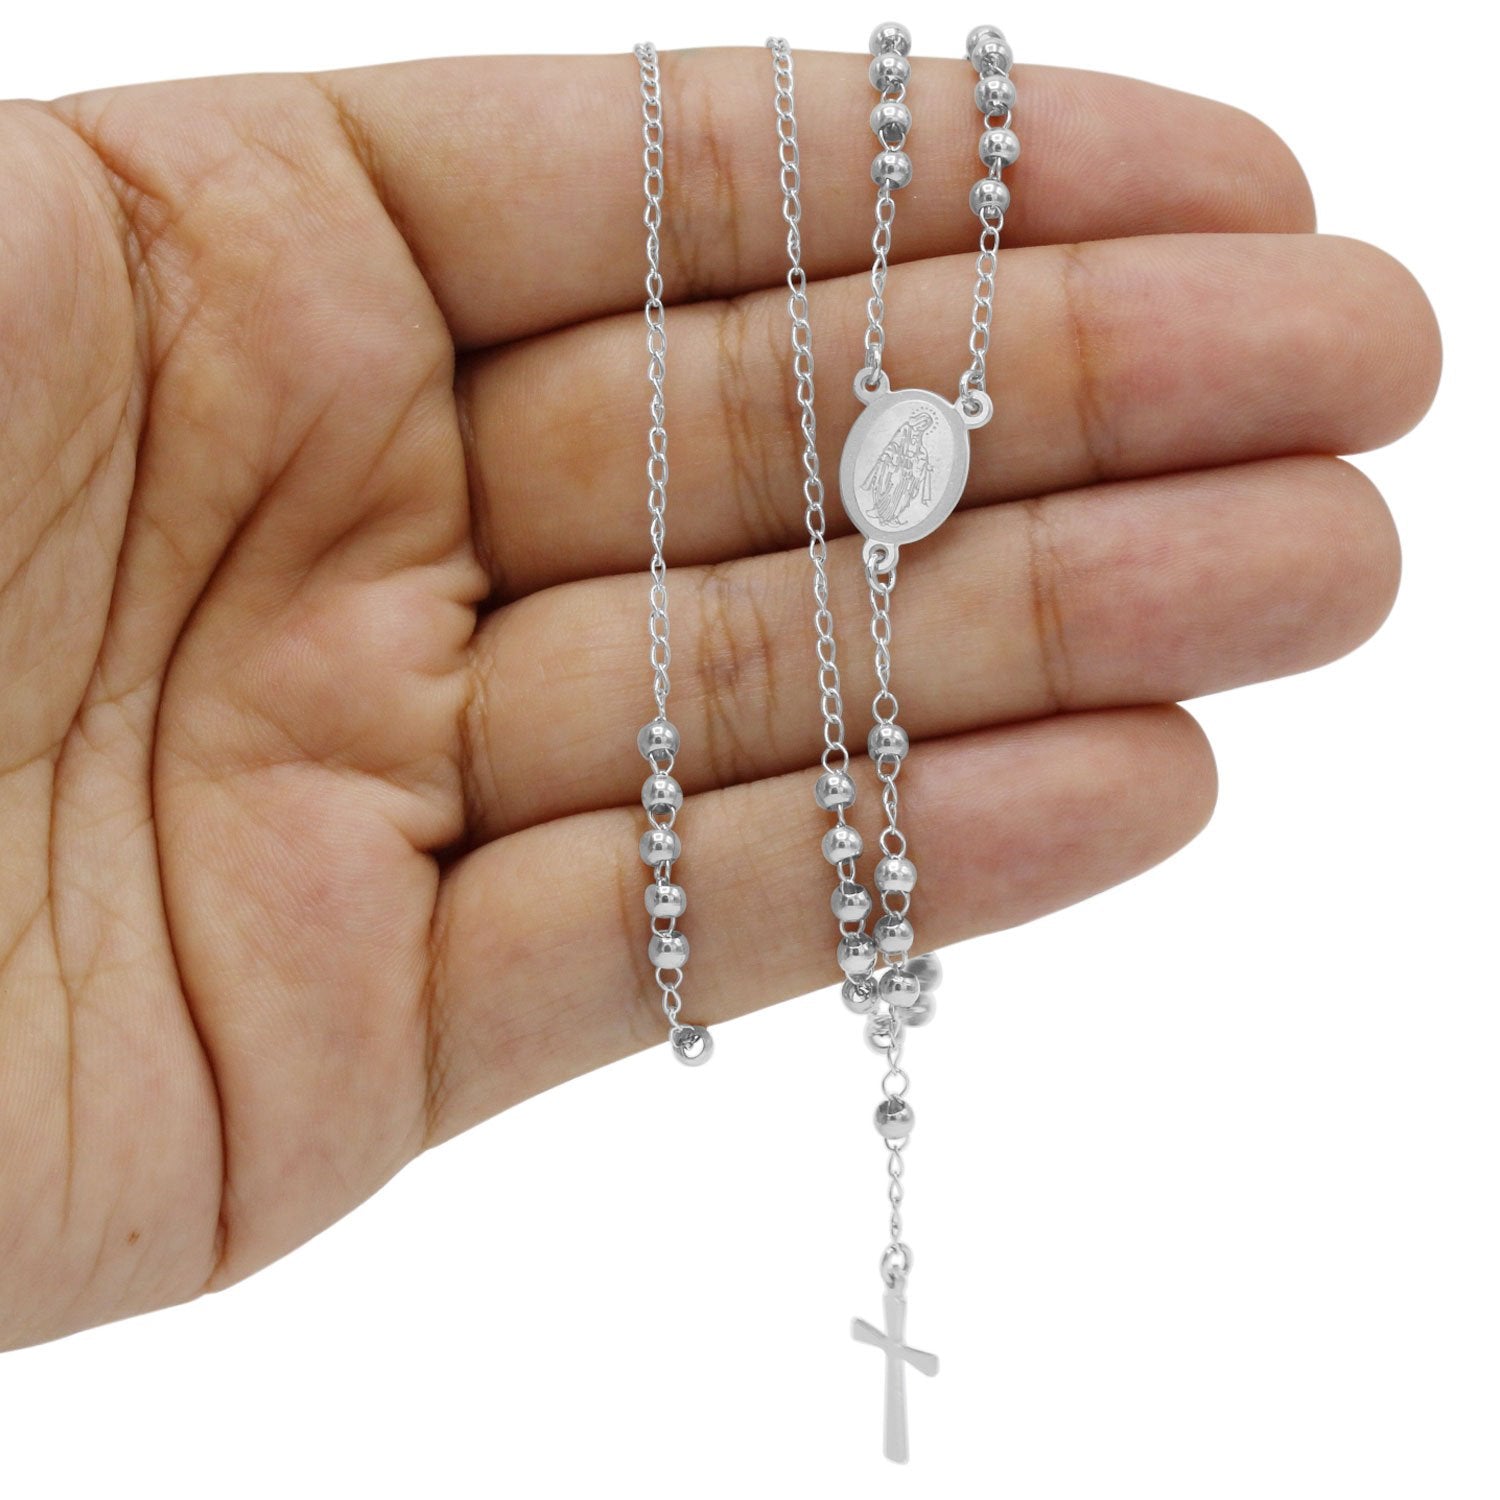 Necklace Pendant Set for Women